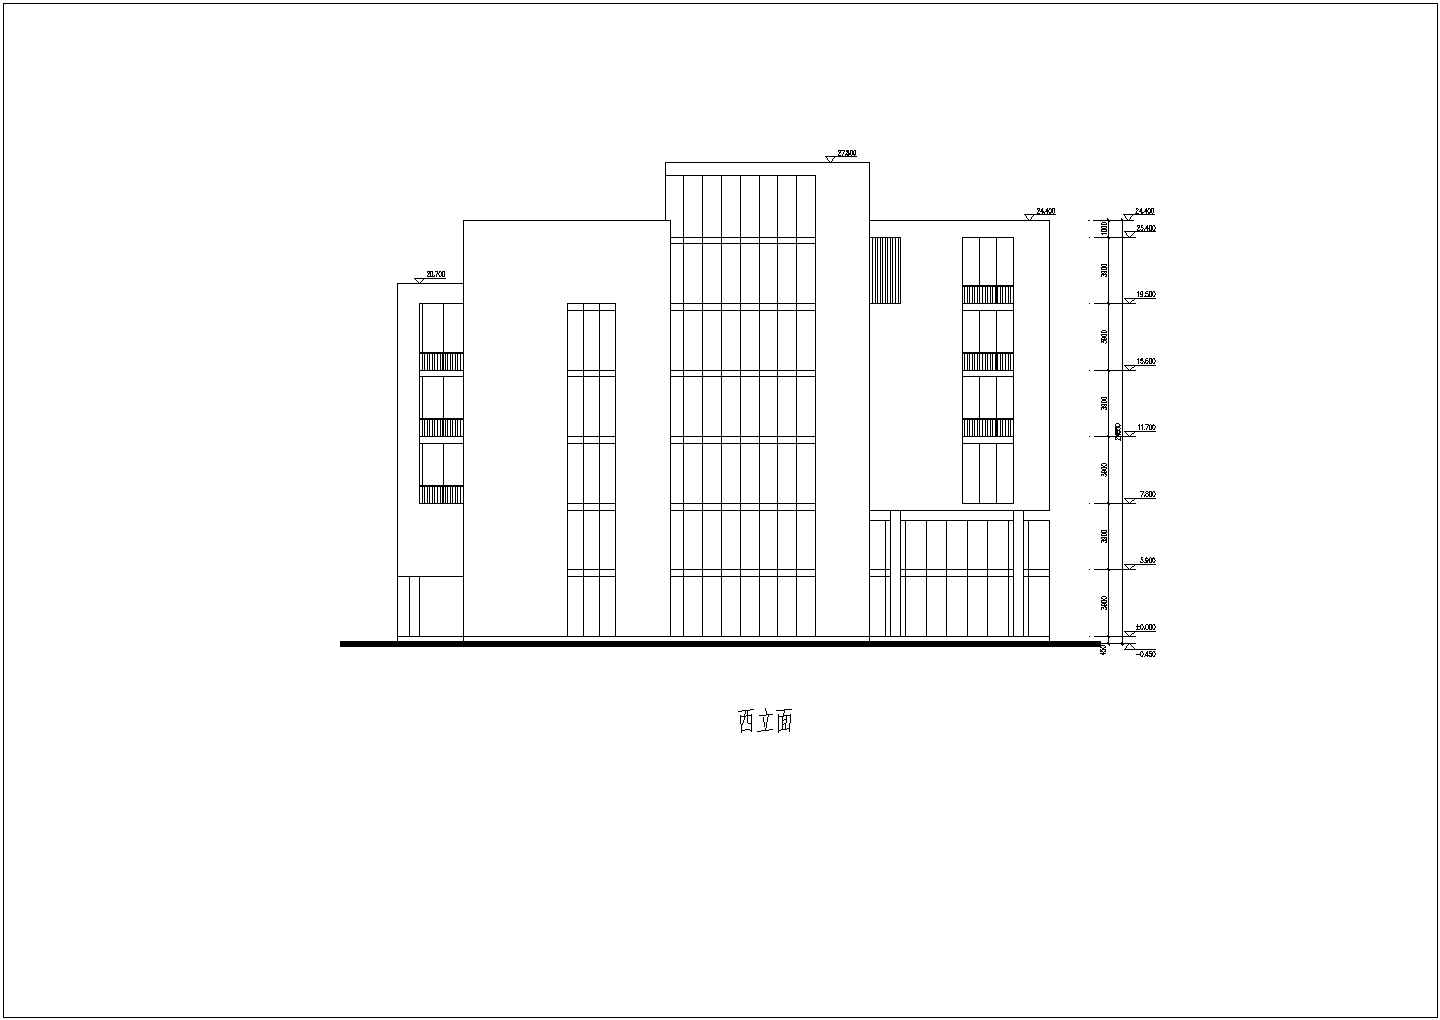 蓝光空港总部基地办公楼建筑方案设计图